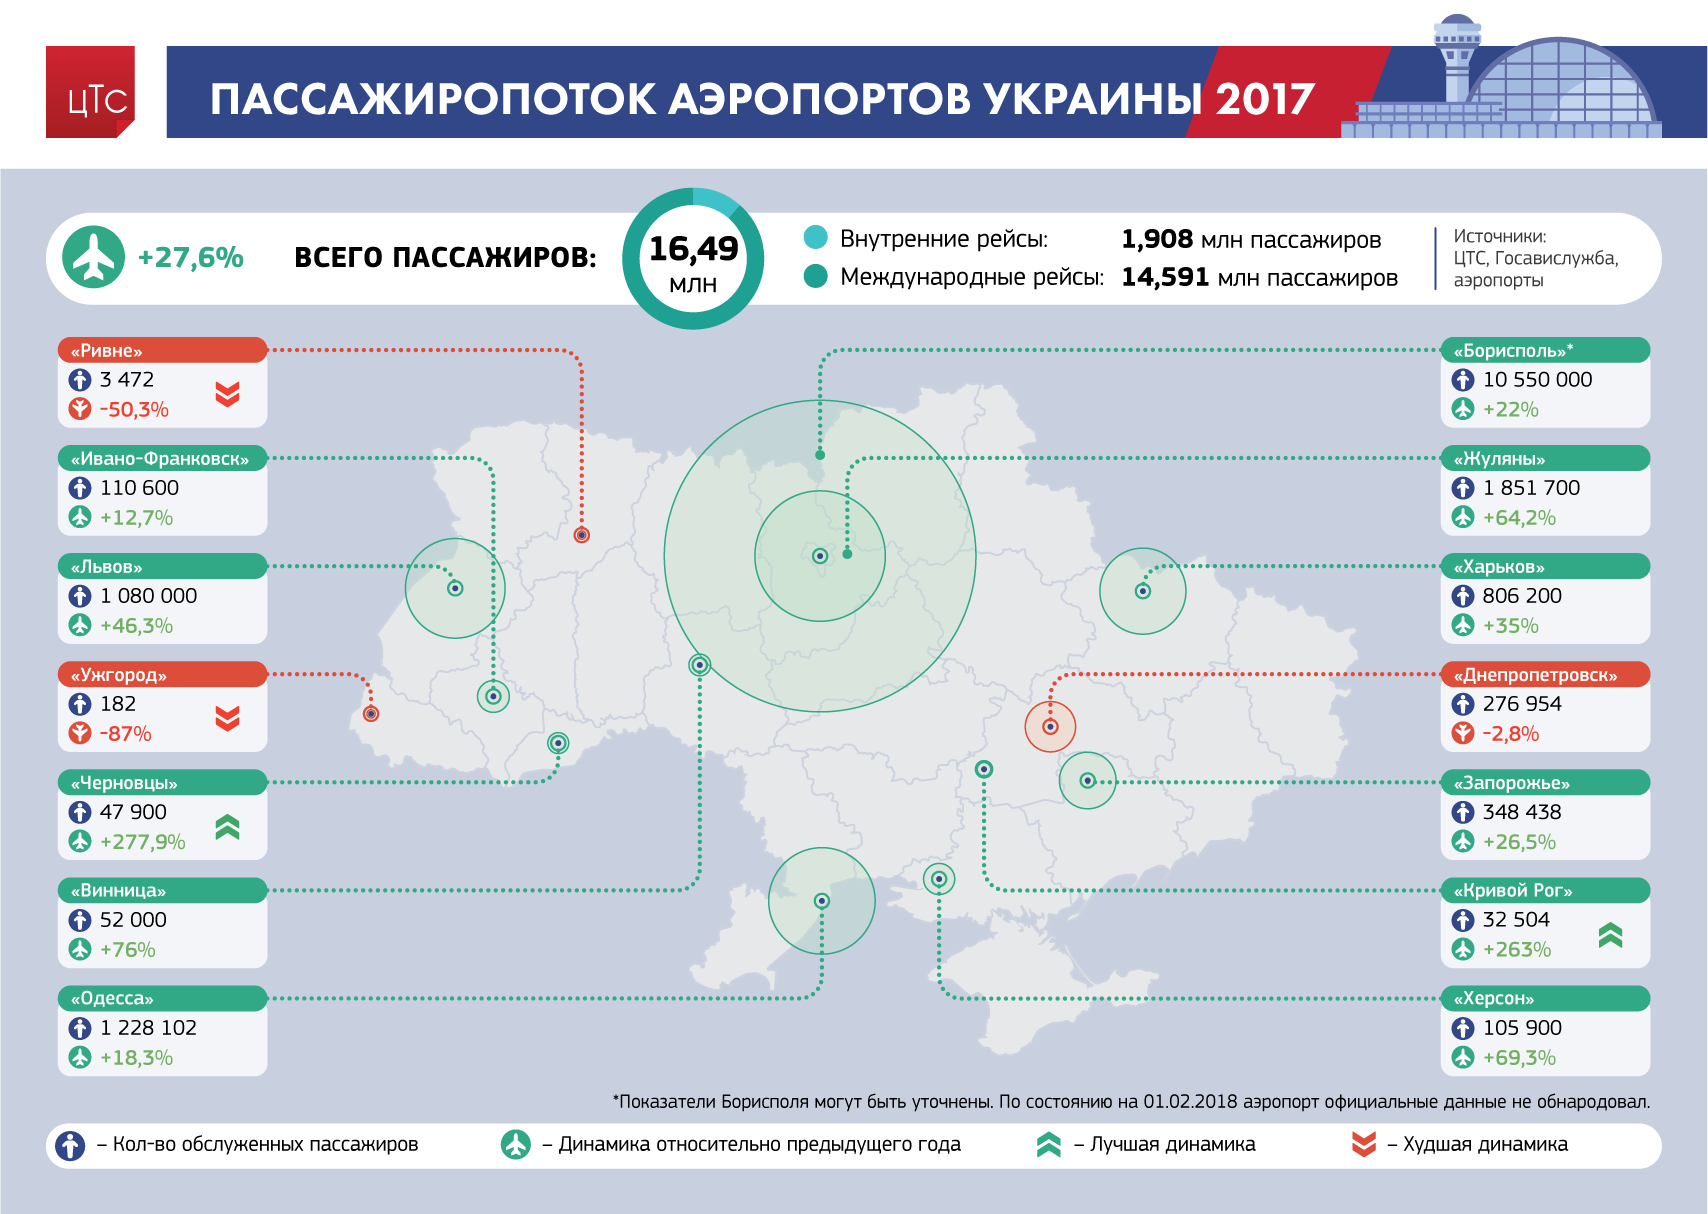 Список аэропортов крыма. описание, расположение и фото действующих и нет